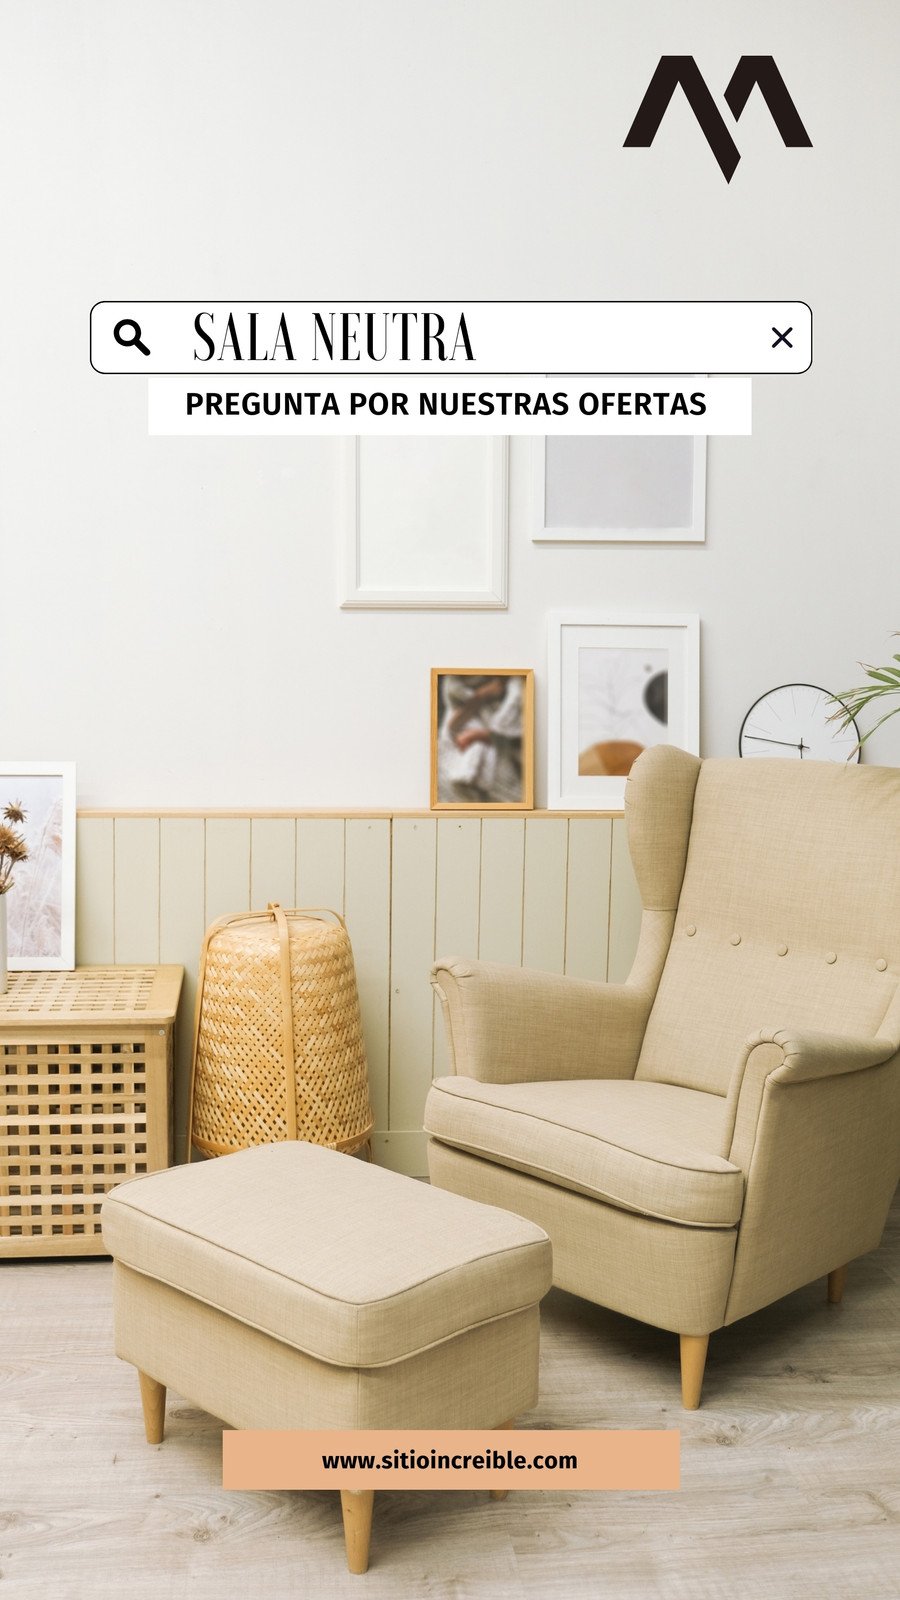 Diseña un flyer de venta Muebles con plantillas editables